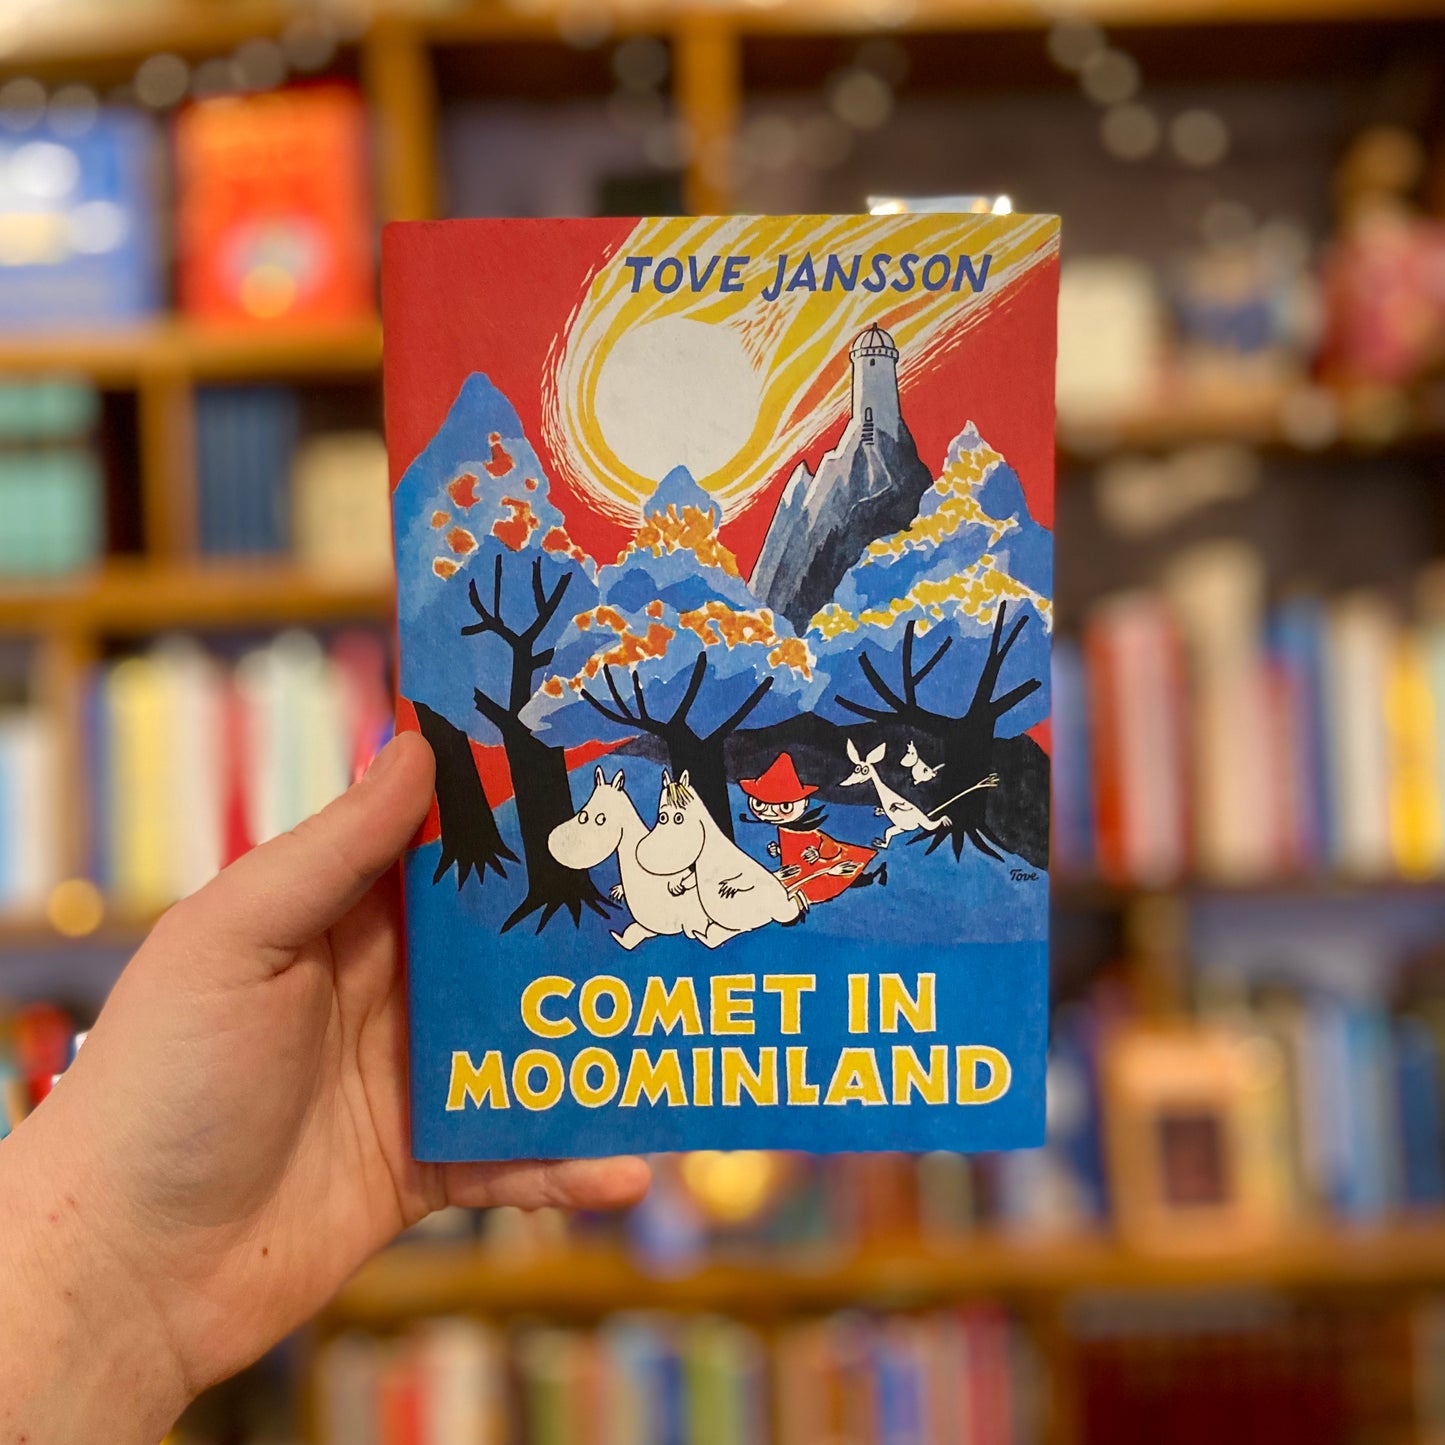 Comet in Moominland – Tove Jansson